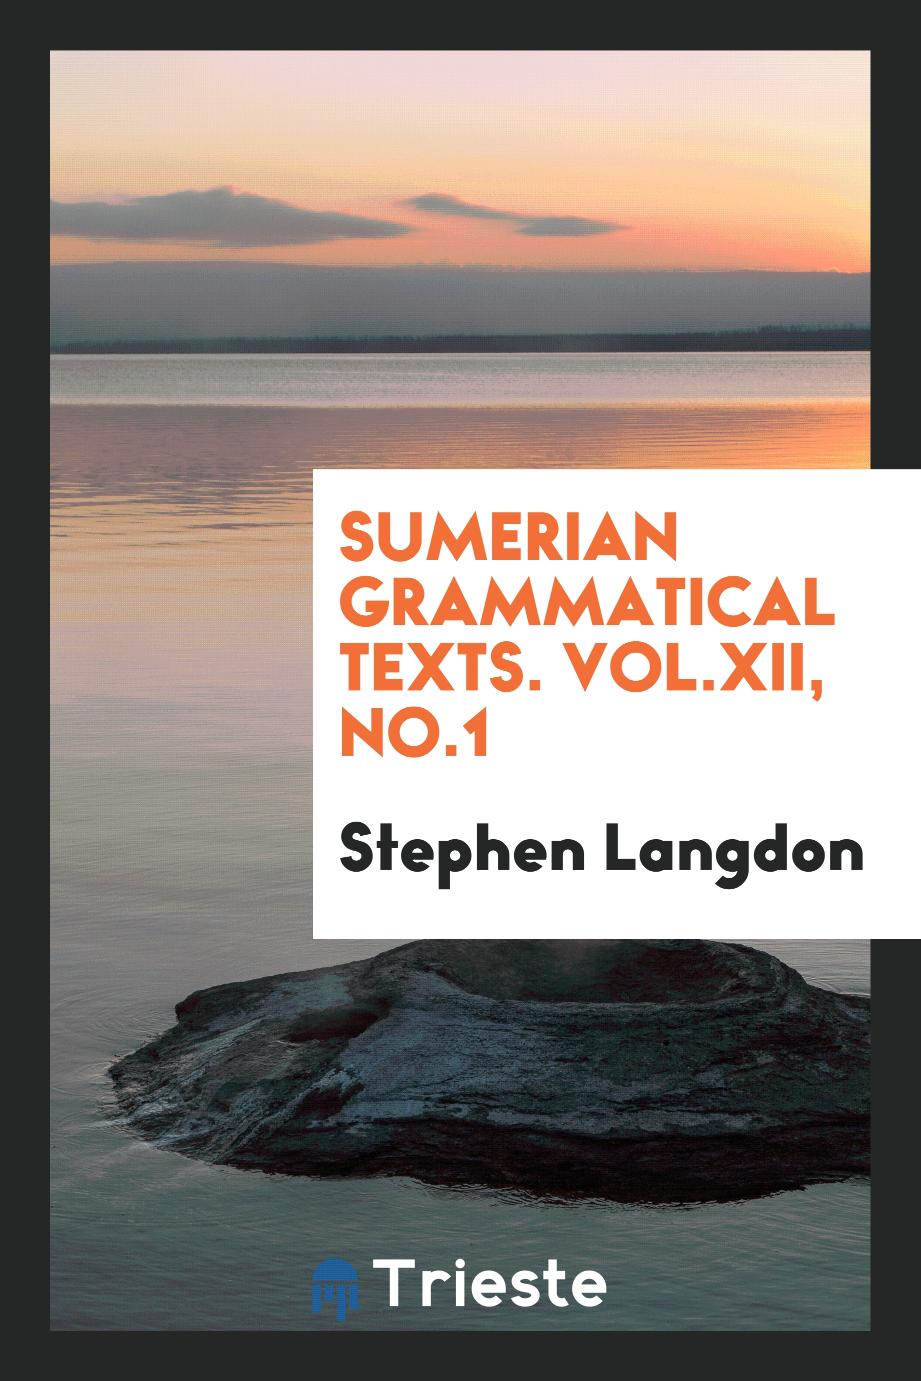 Sumerian Grammatical Texts. Vol.XII, No.1